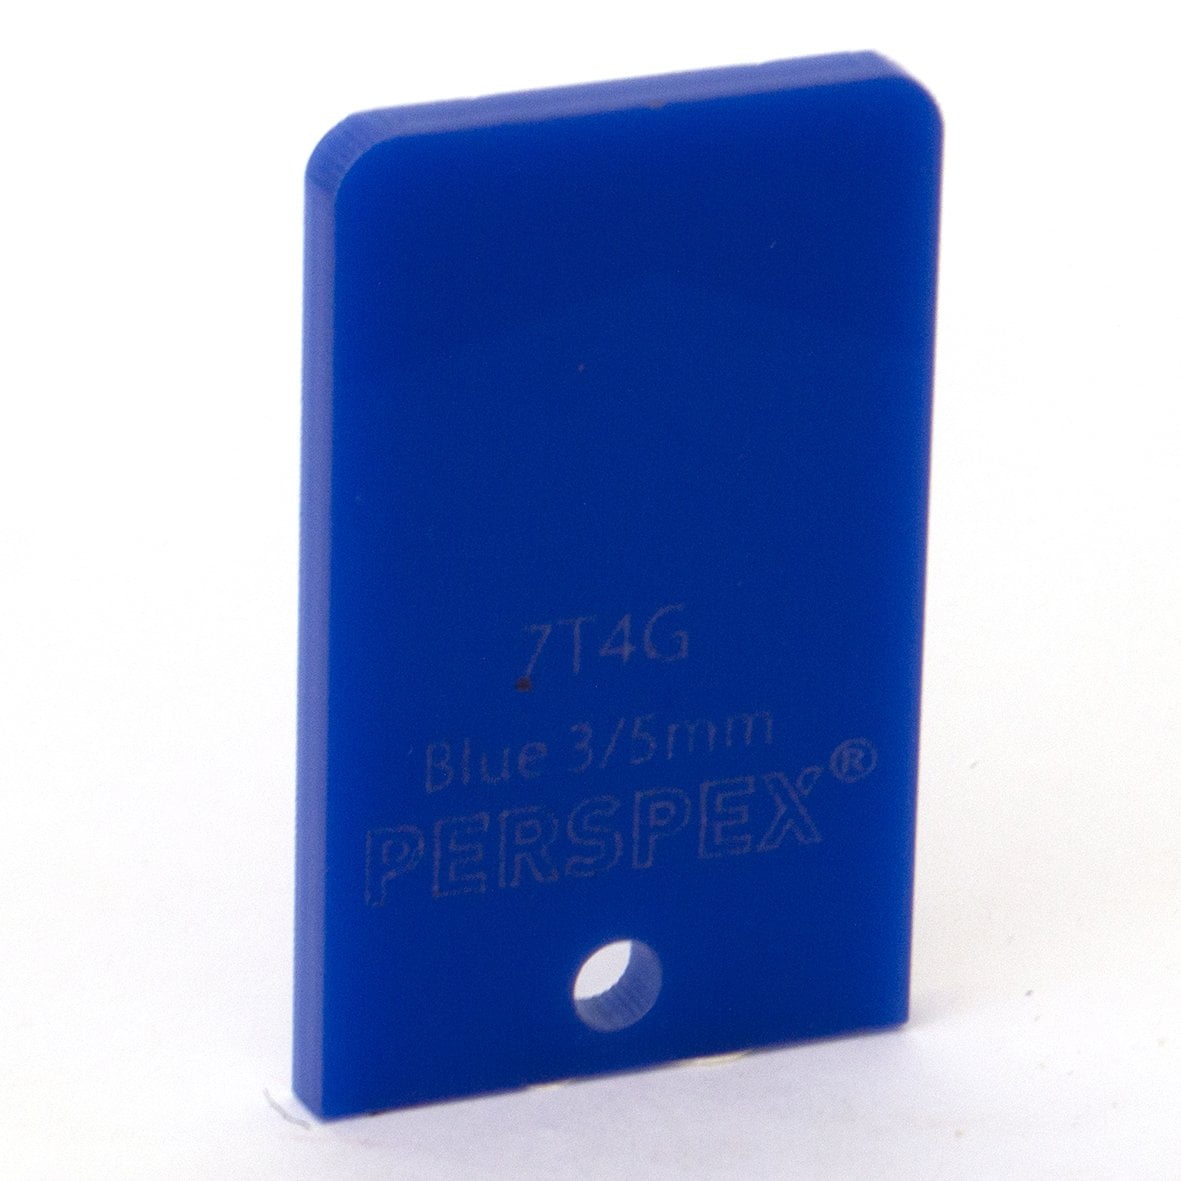 7T4G, 3mm Standard Blue, 1000x600mm